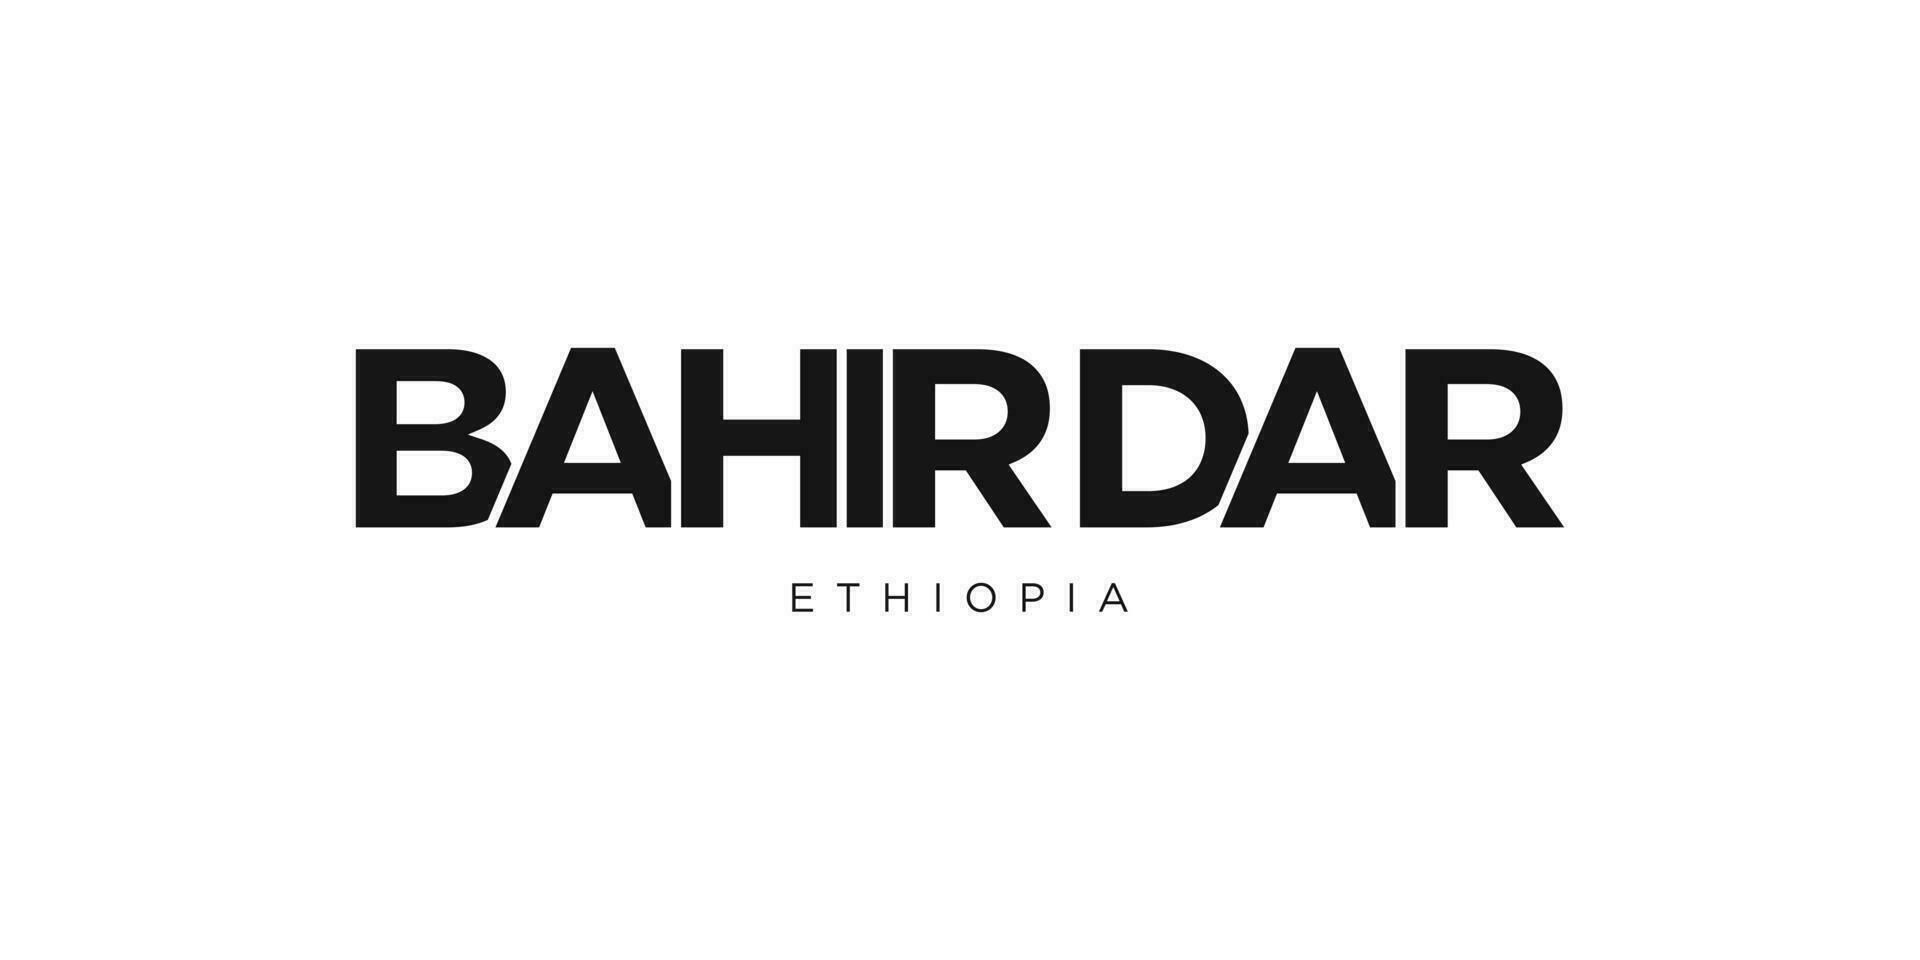 Bahir dar in de Ethiopië embleem. de ontwerp Kenmerken een meetkundig stijl, vector illustratie met stoutmoedig typografie in een modern lettertype. de grafisch leuze belettering.